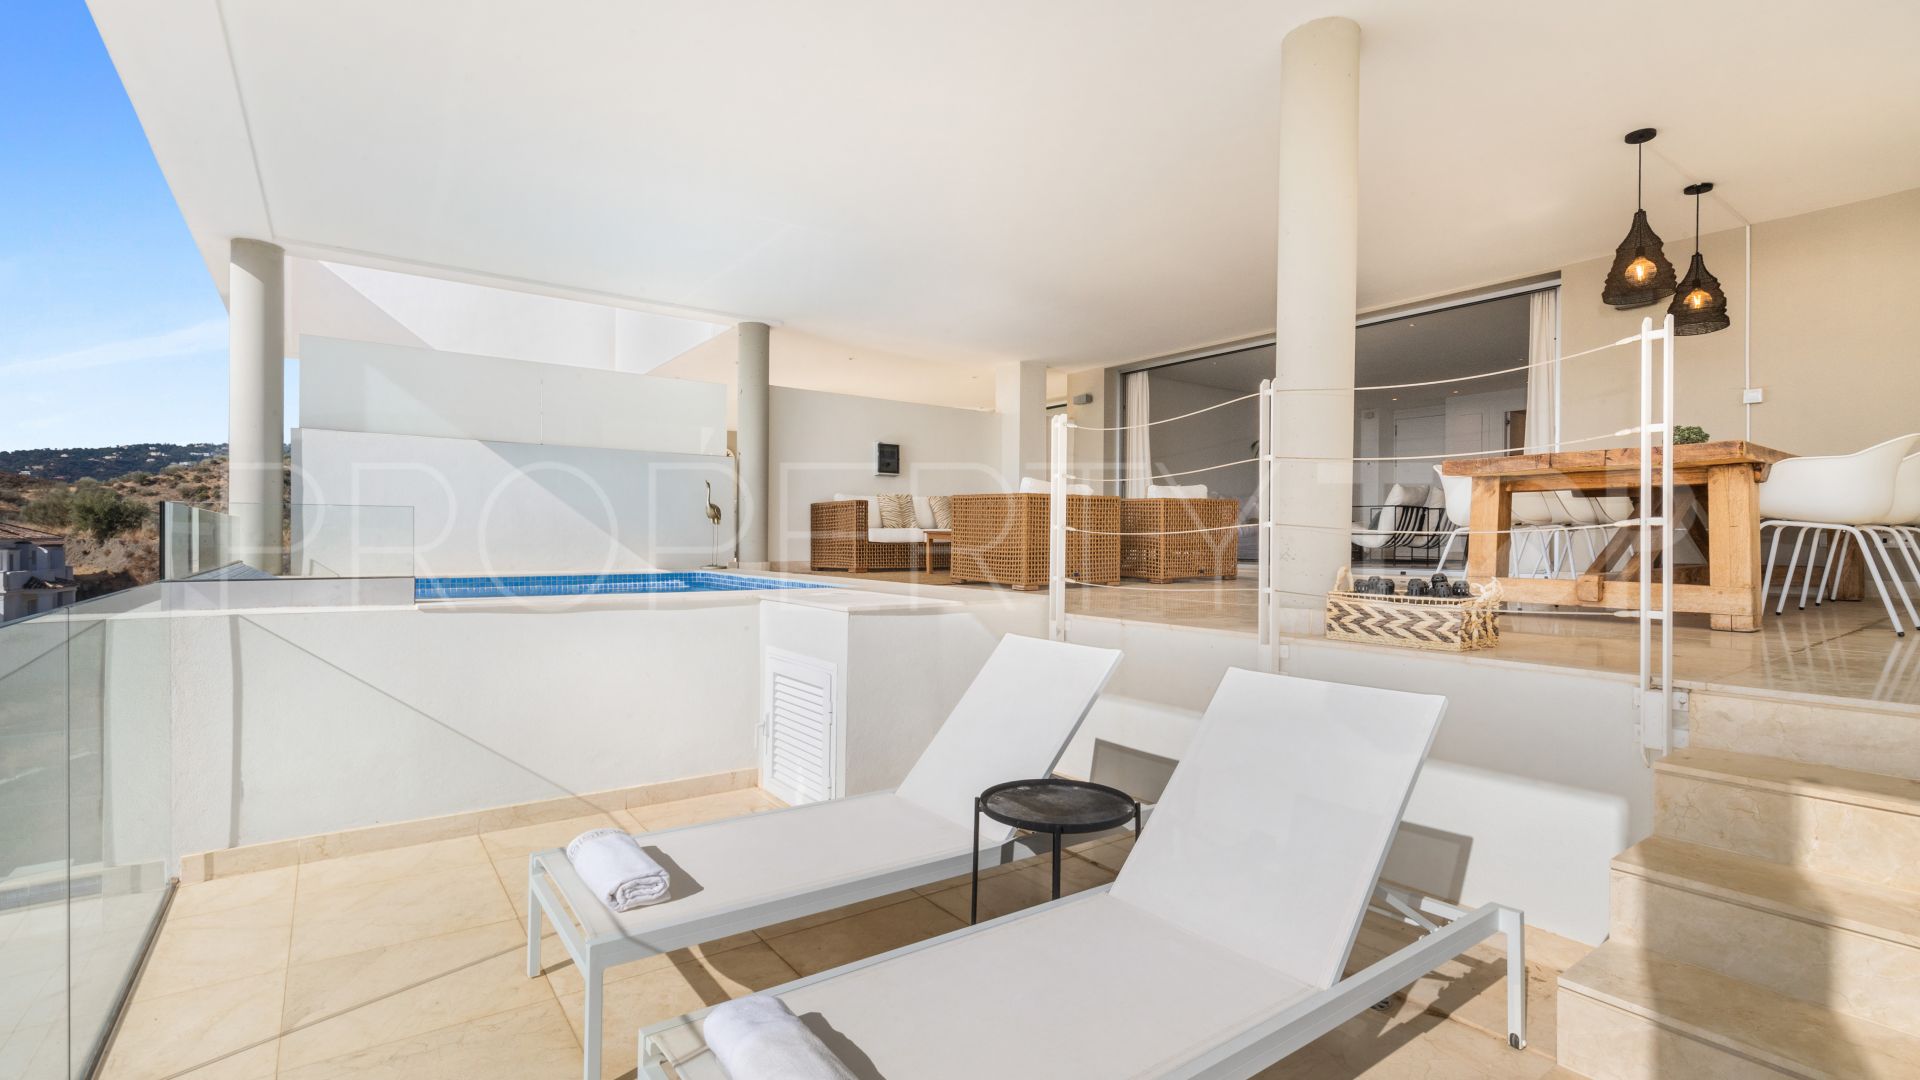 For sale apartment in La Morelia de Marbella with 2 bedrooms